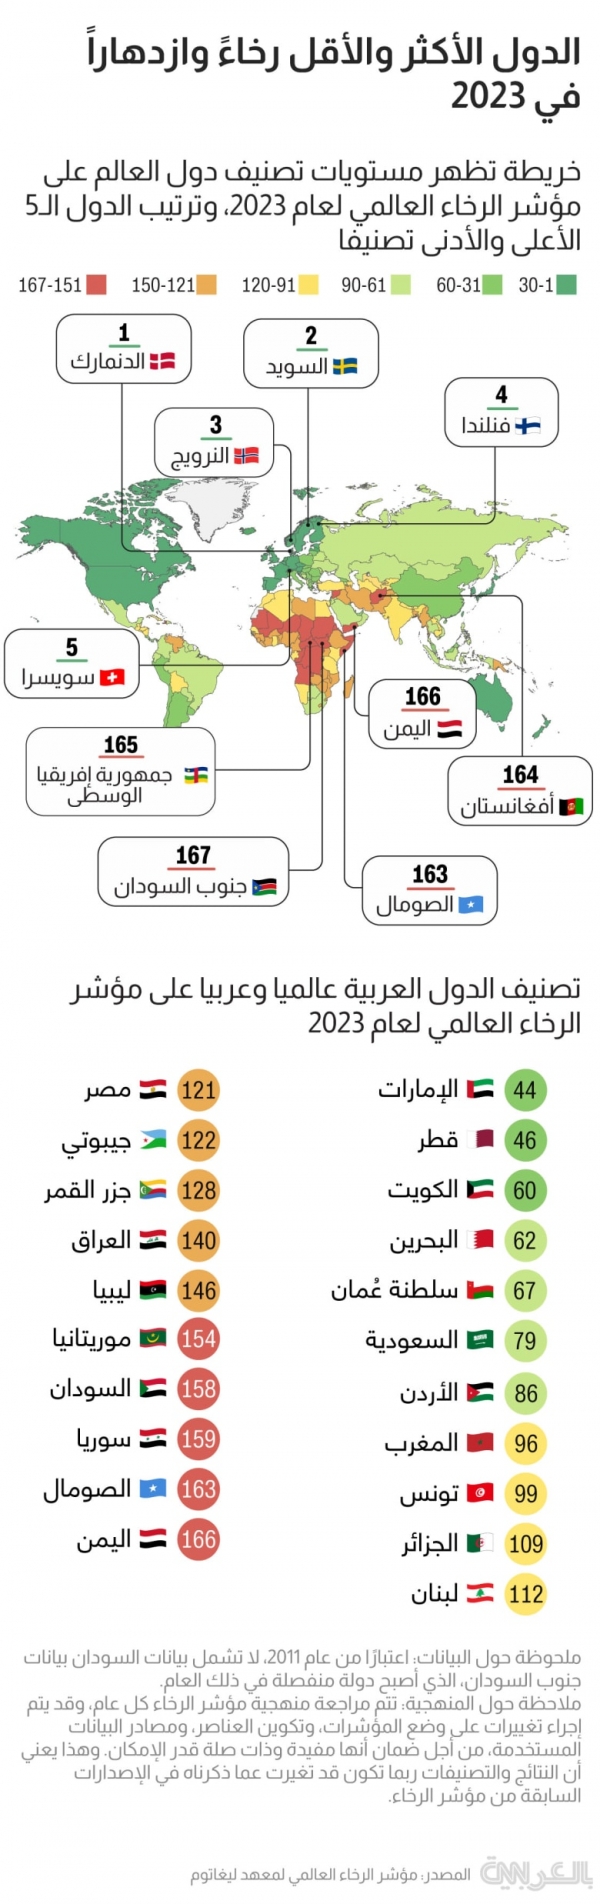 لندن: اليمن أقل الدول العربية رخاءً وازدهارا لعام 2023 والامارات تتصدر القائمة خليجيا وعربيا